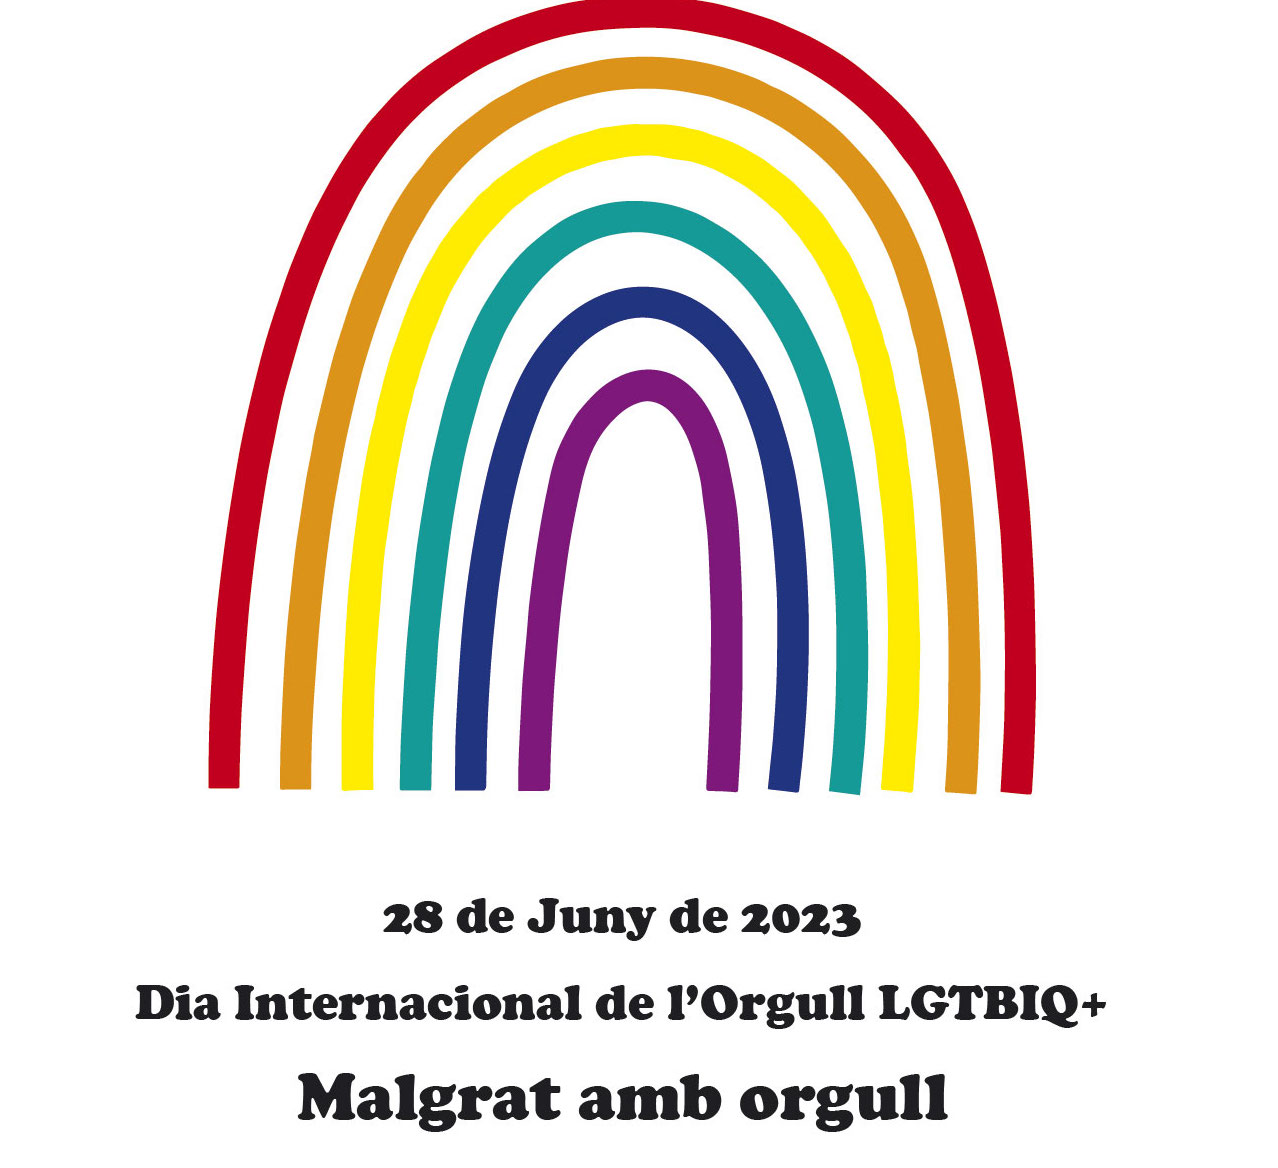 Poesia itinerant per commemorar el Dia Internacional de l'Orgull LGTBIQ+